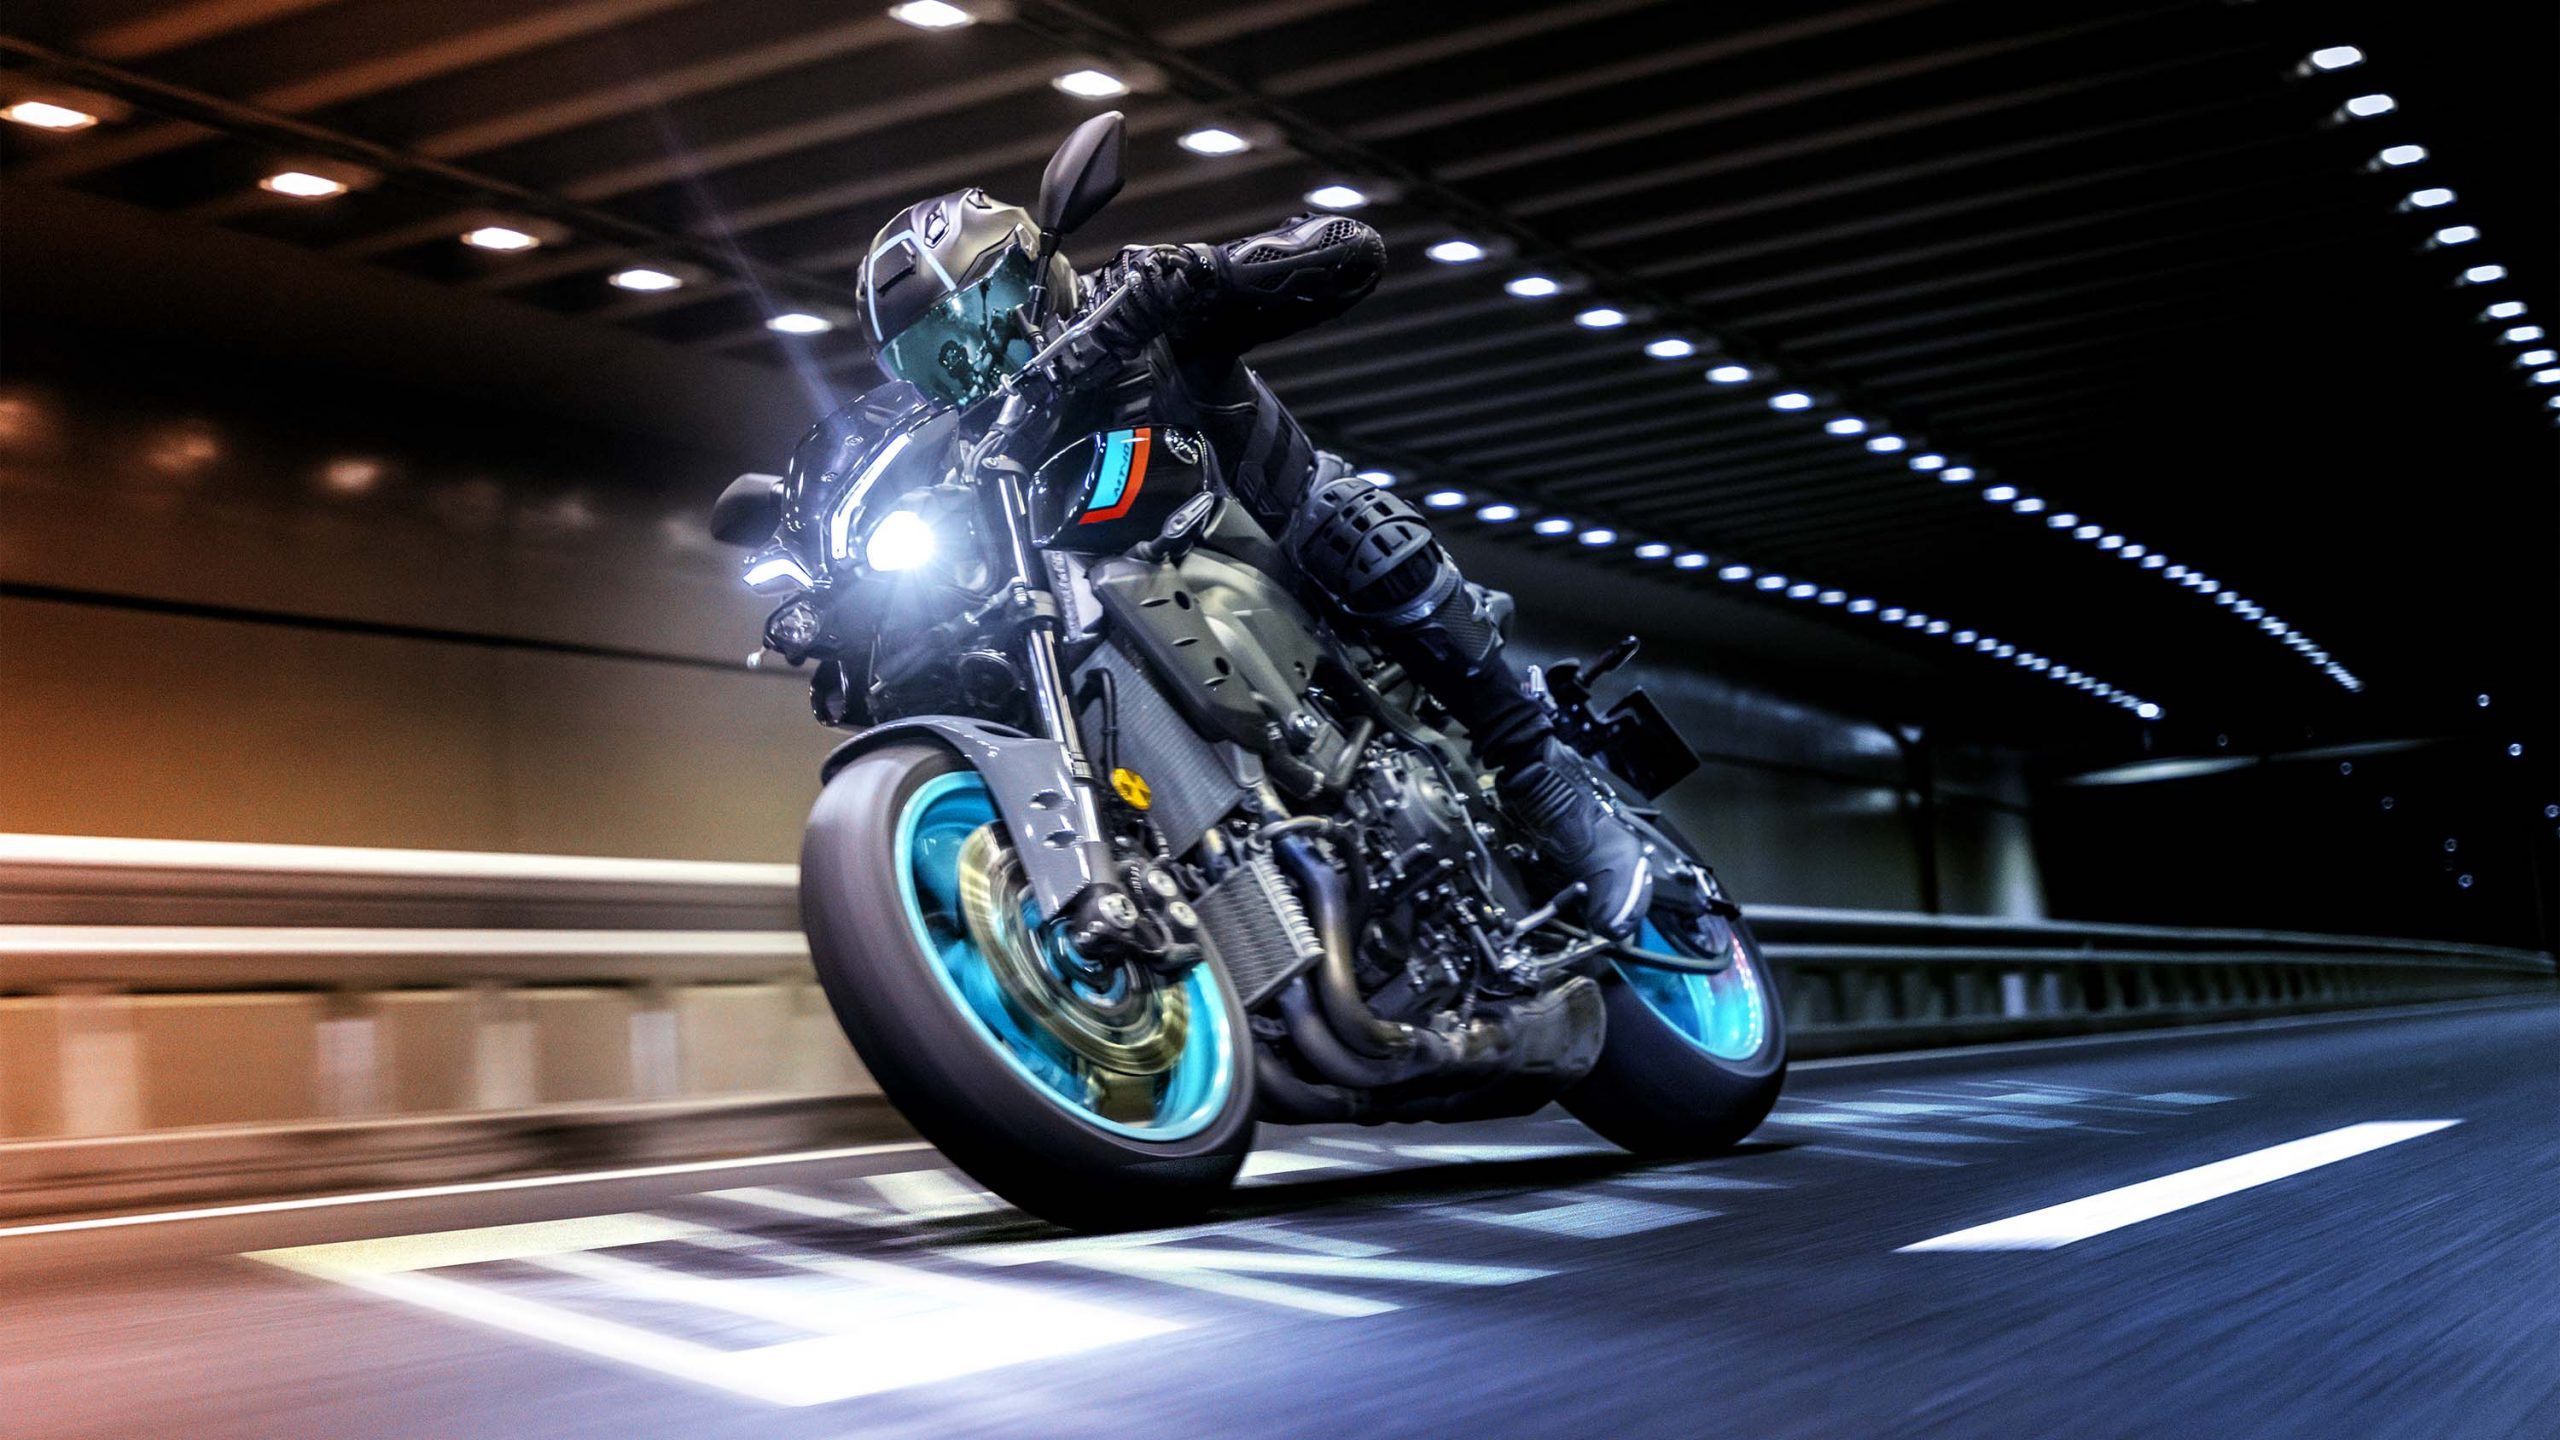 Cyan 2022 Yamaha MT-10 in a tunnel naked bike